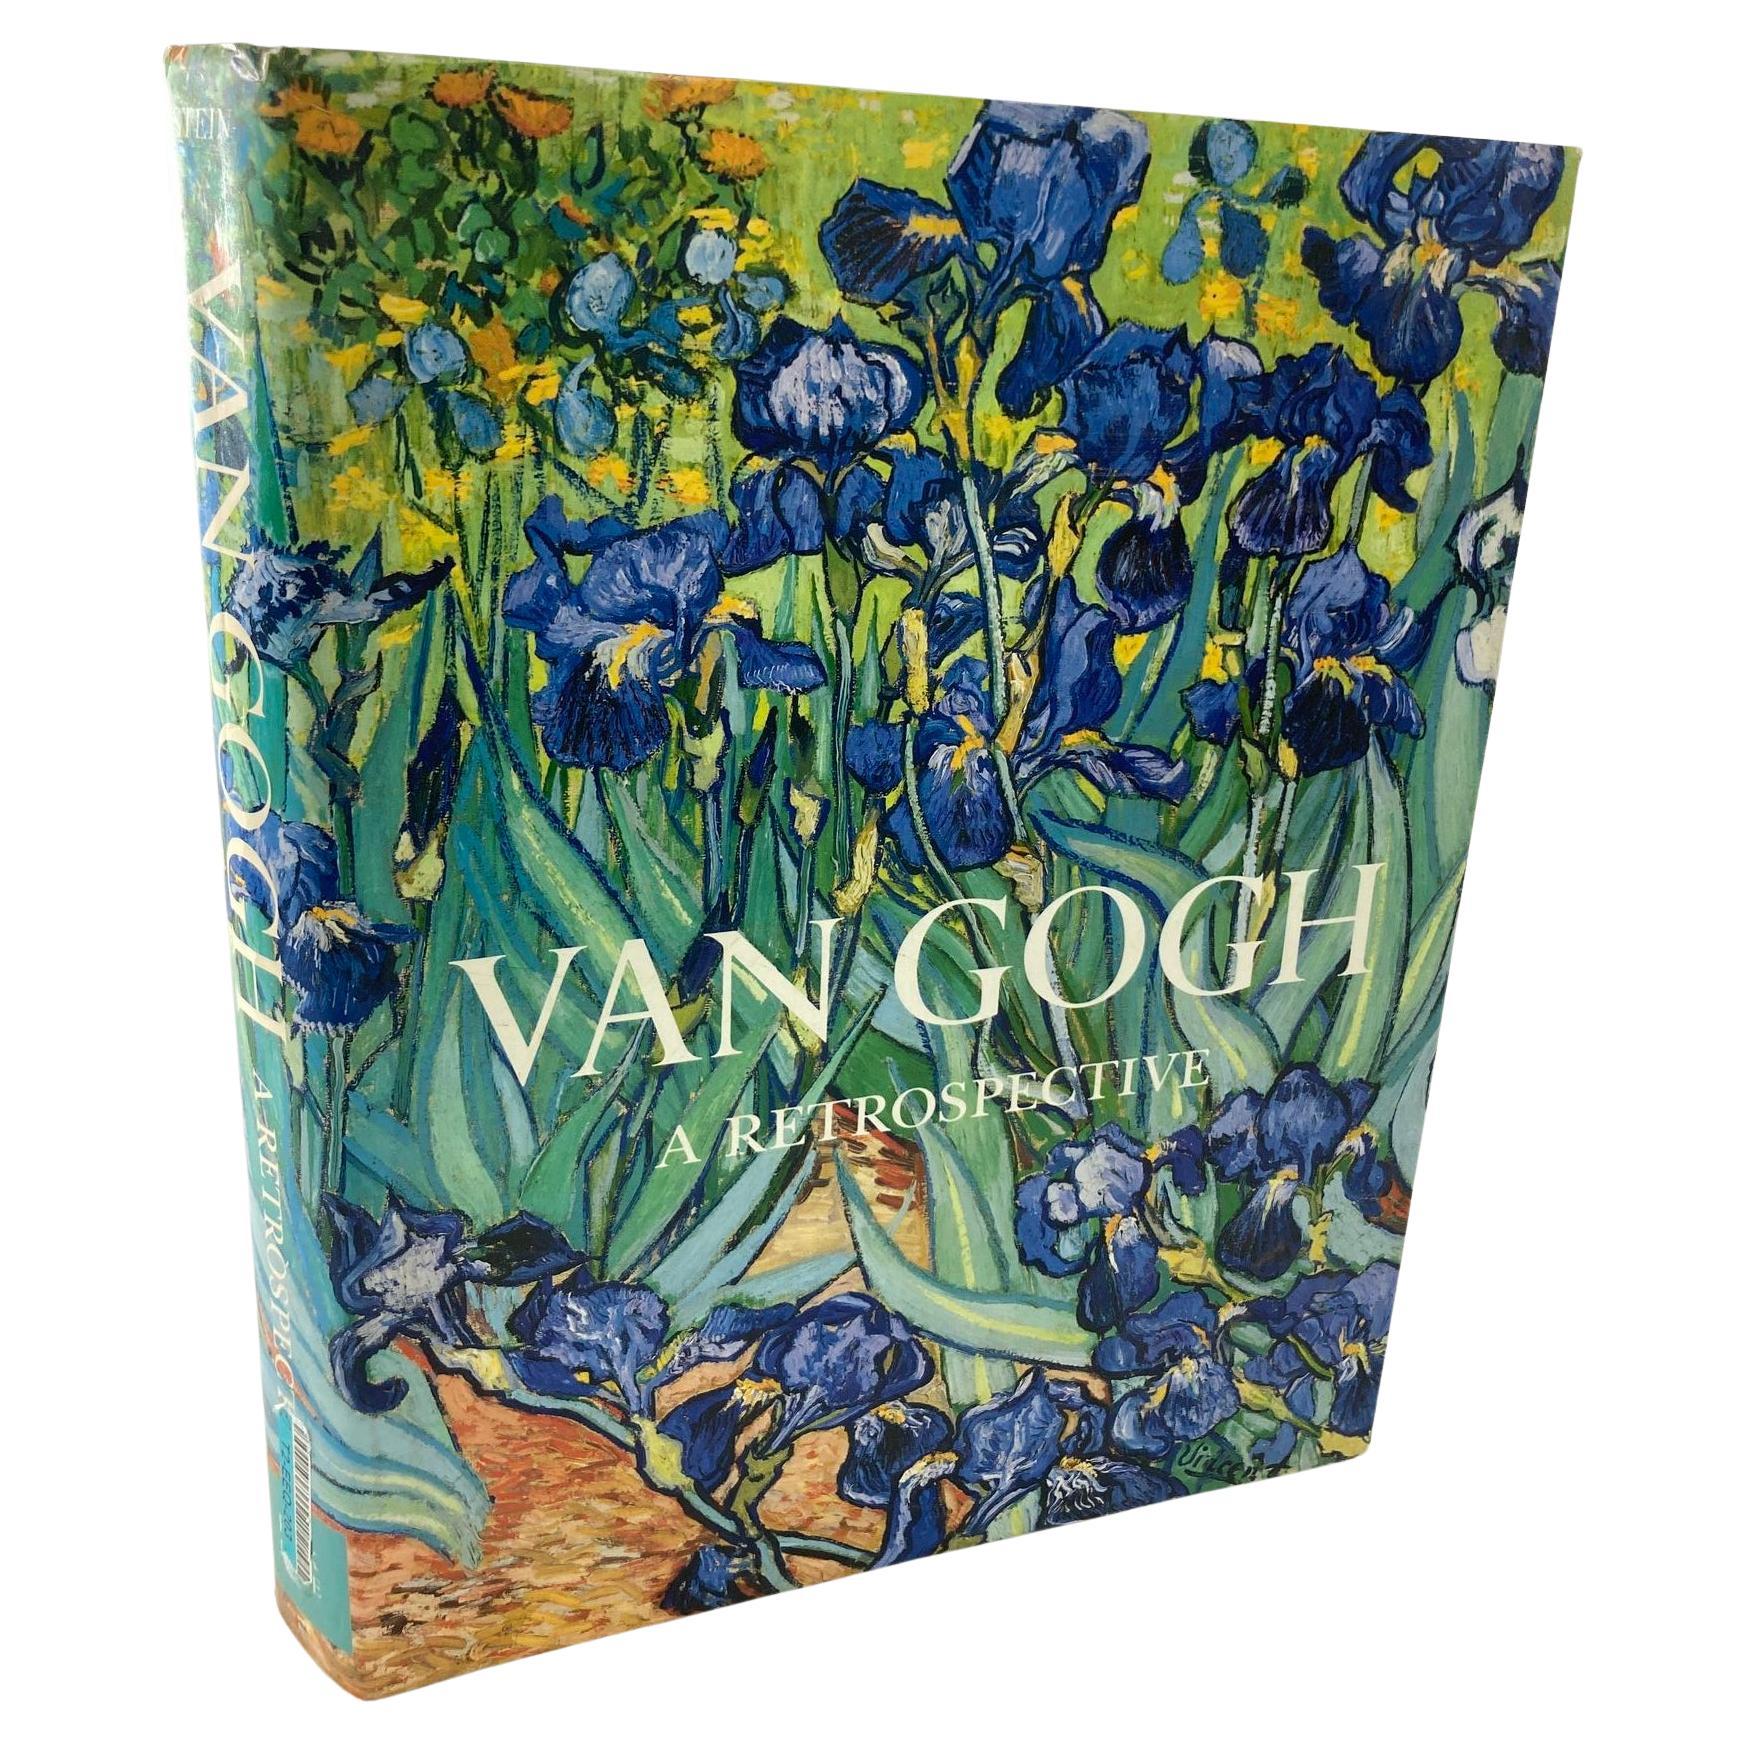 Van Gogh a Retrospective 1986, 1ère édition